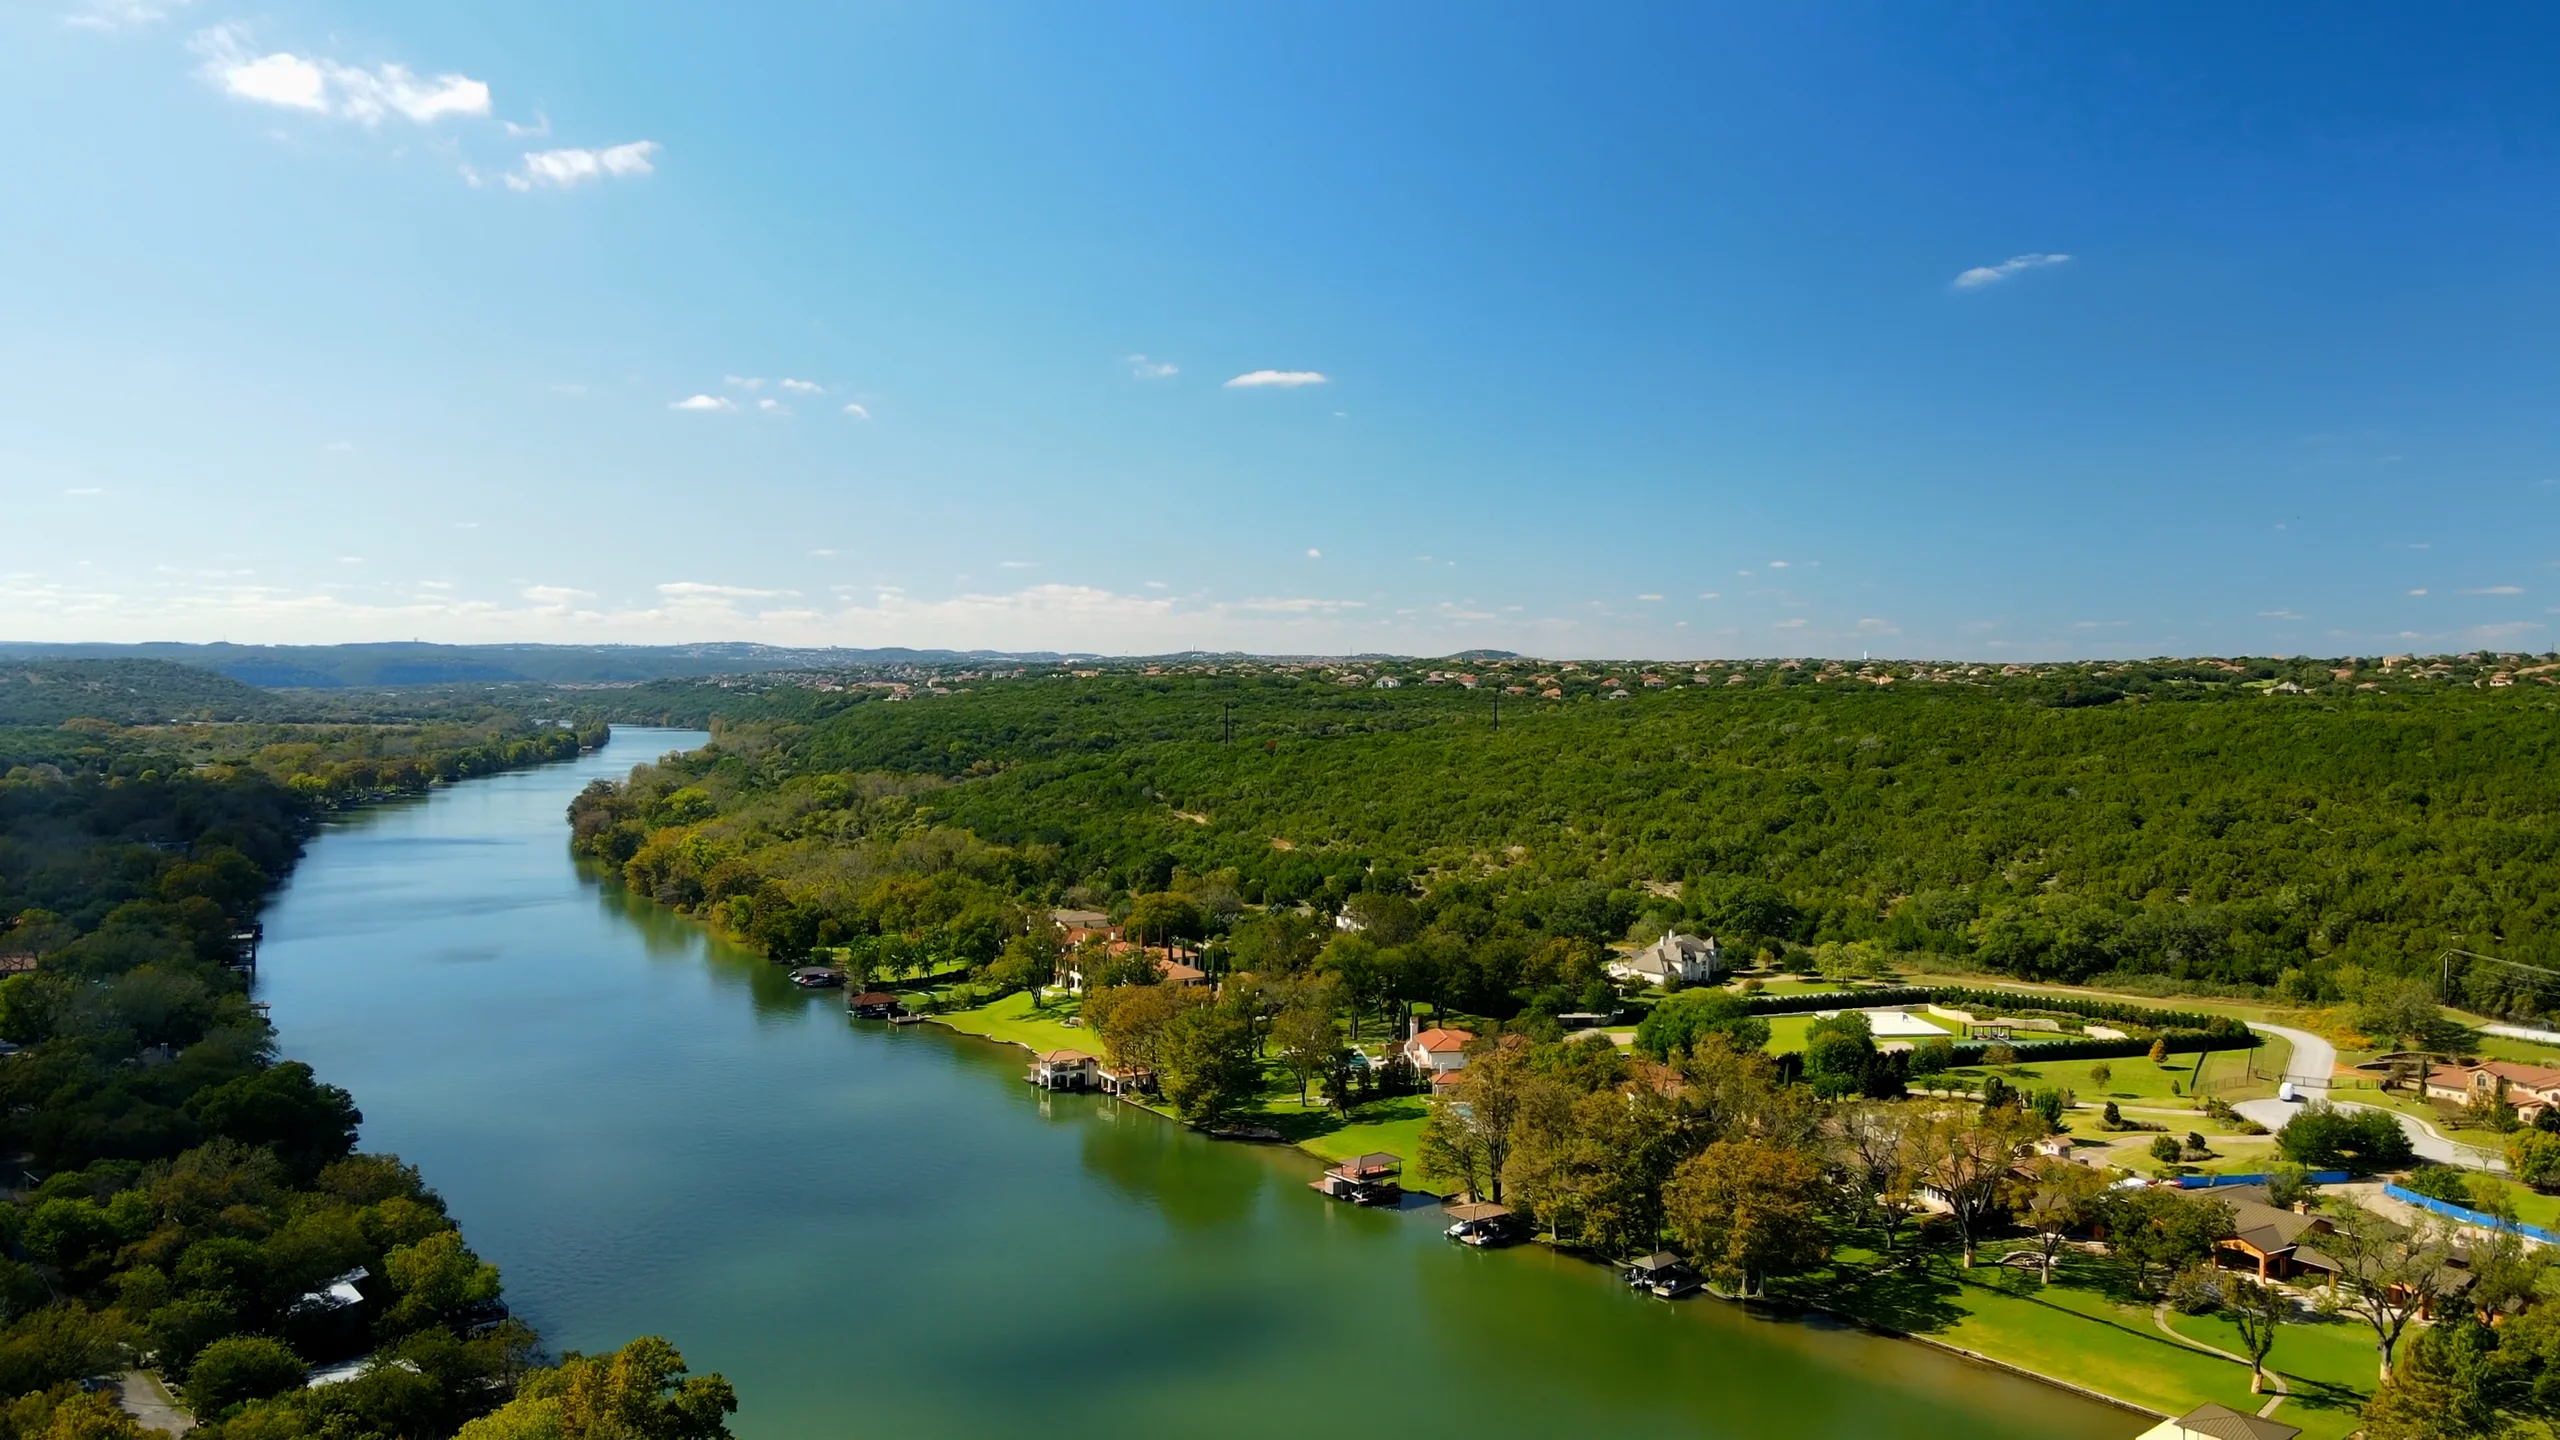 The Overlook of Lake Austin on Vimeo